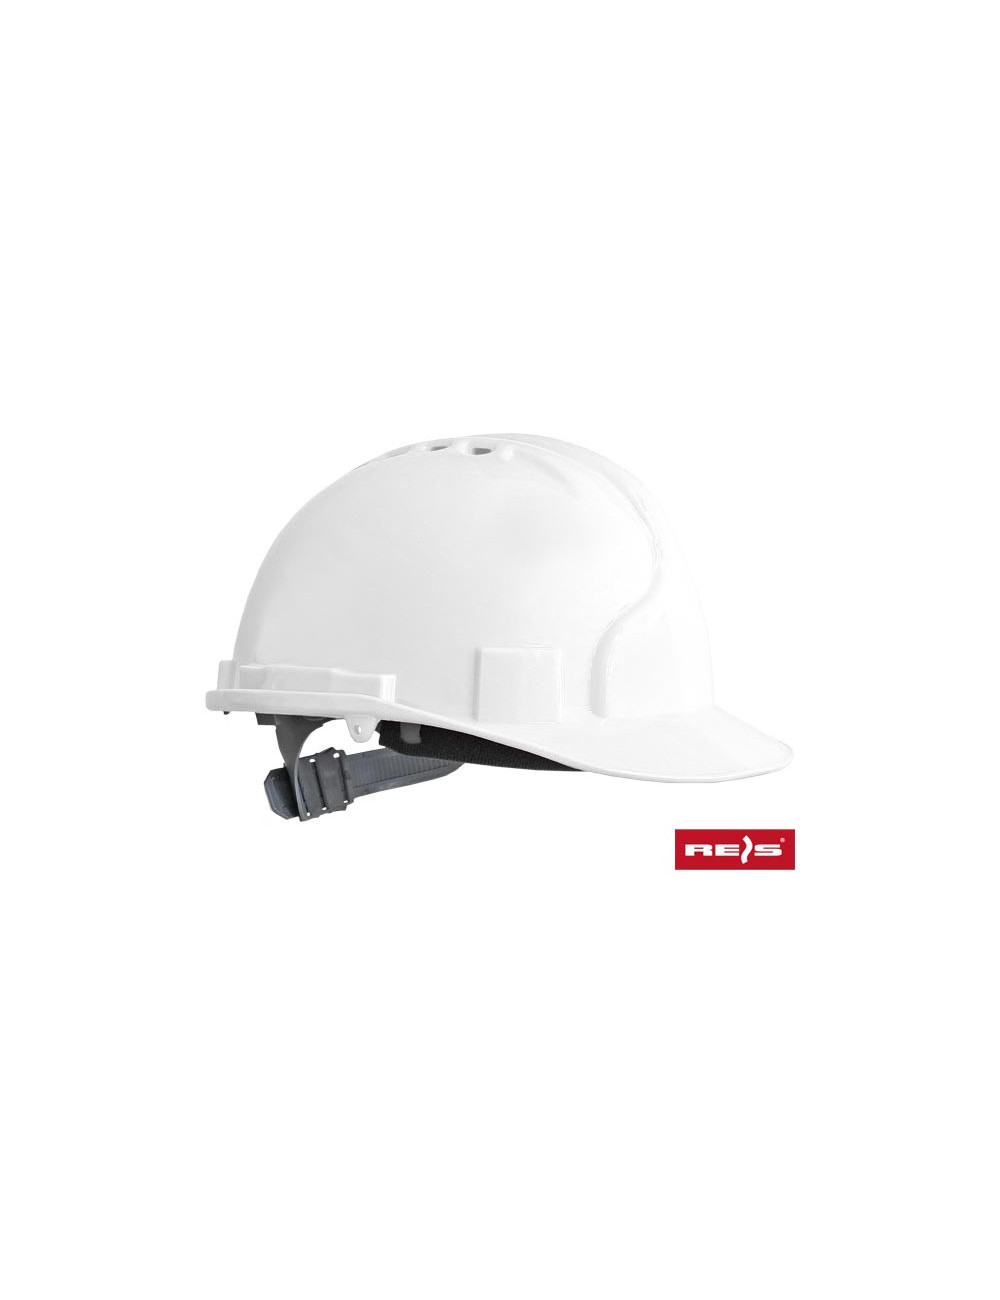 Safety helmet kas w white Reis